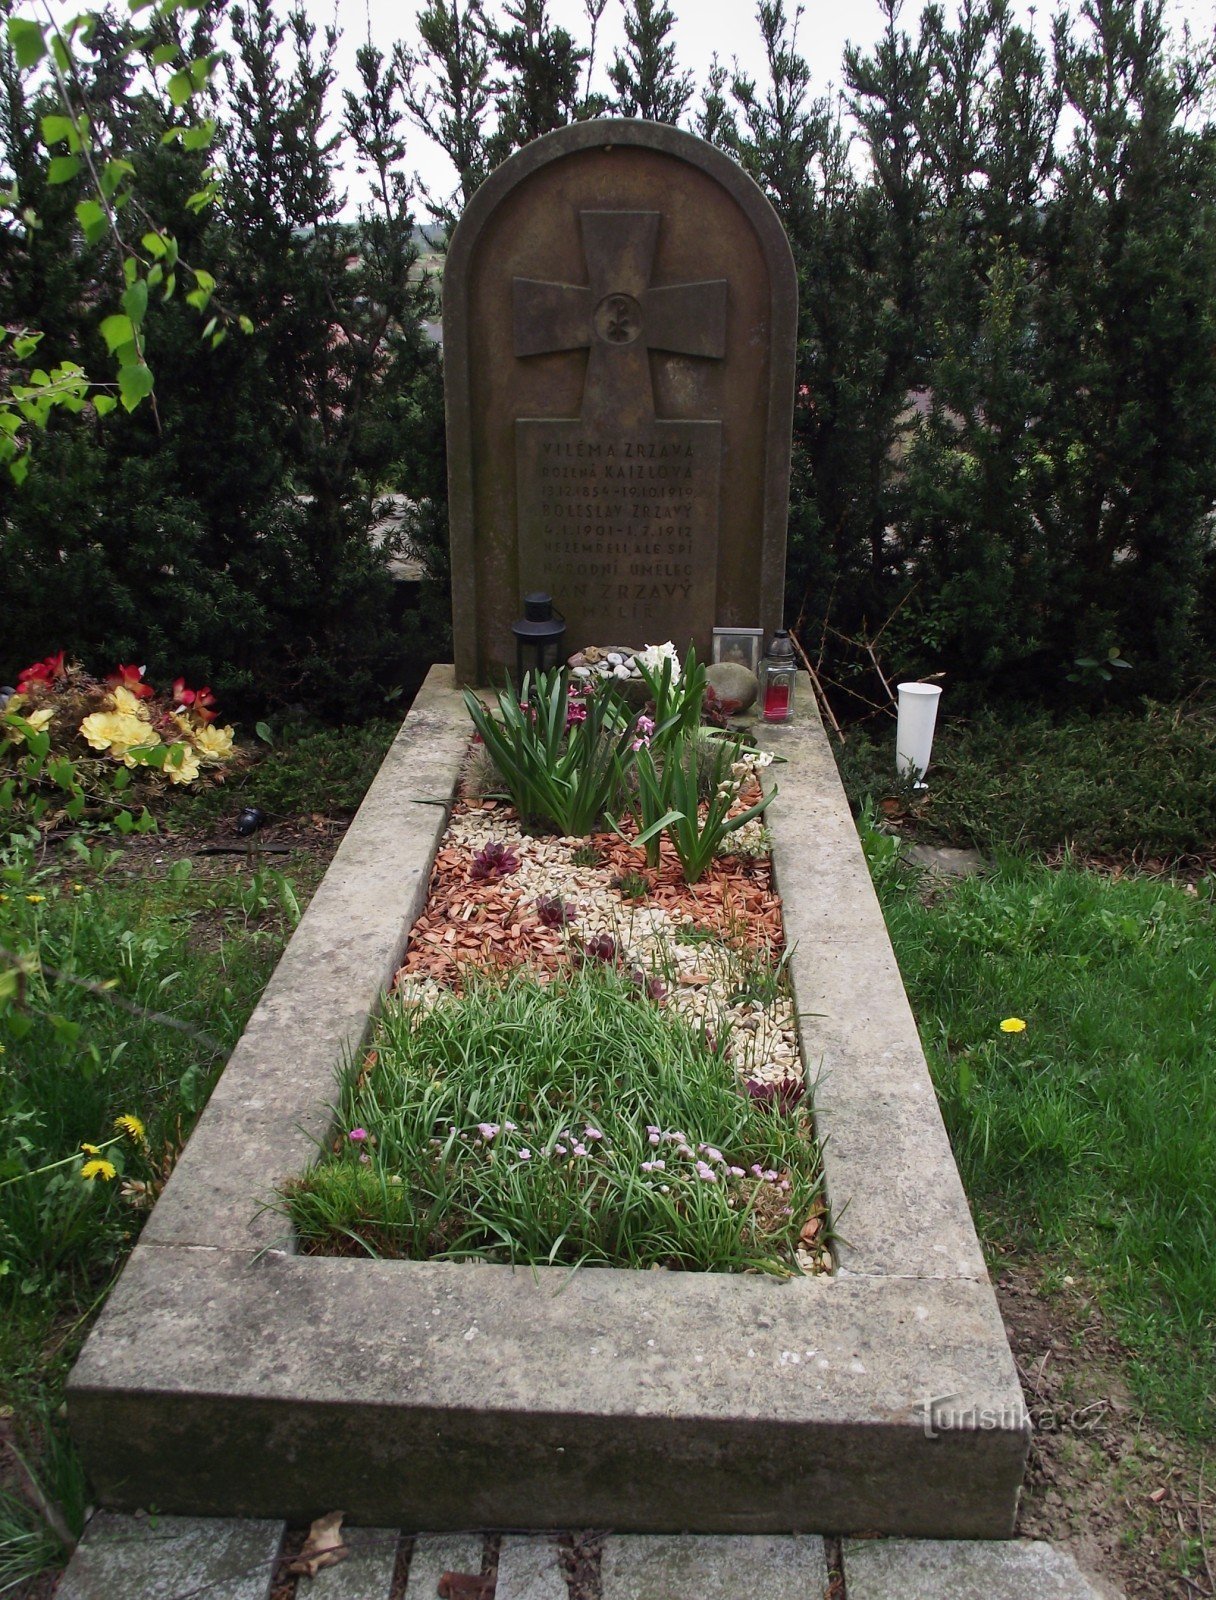 Jan Zrzavý's final resting place